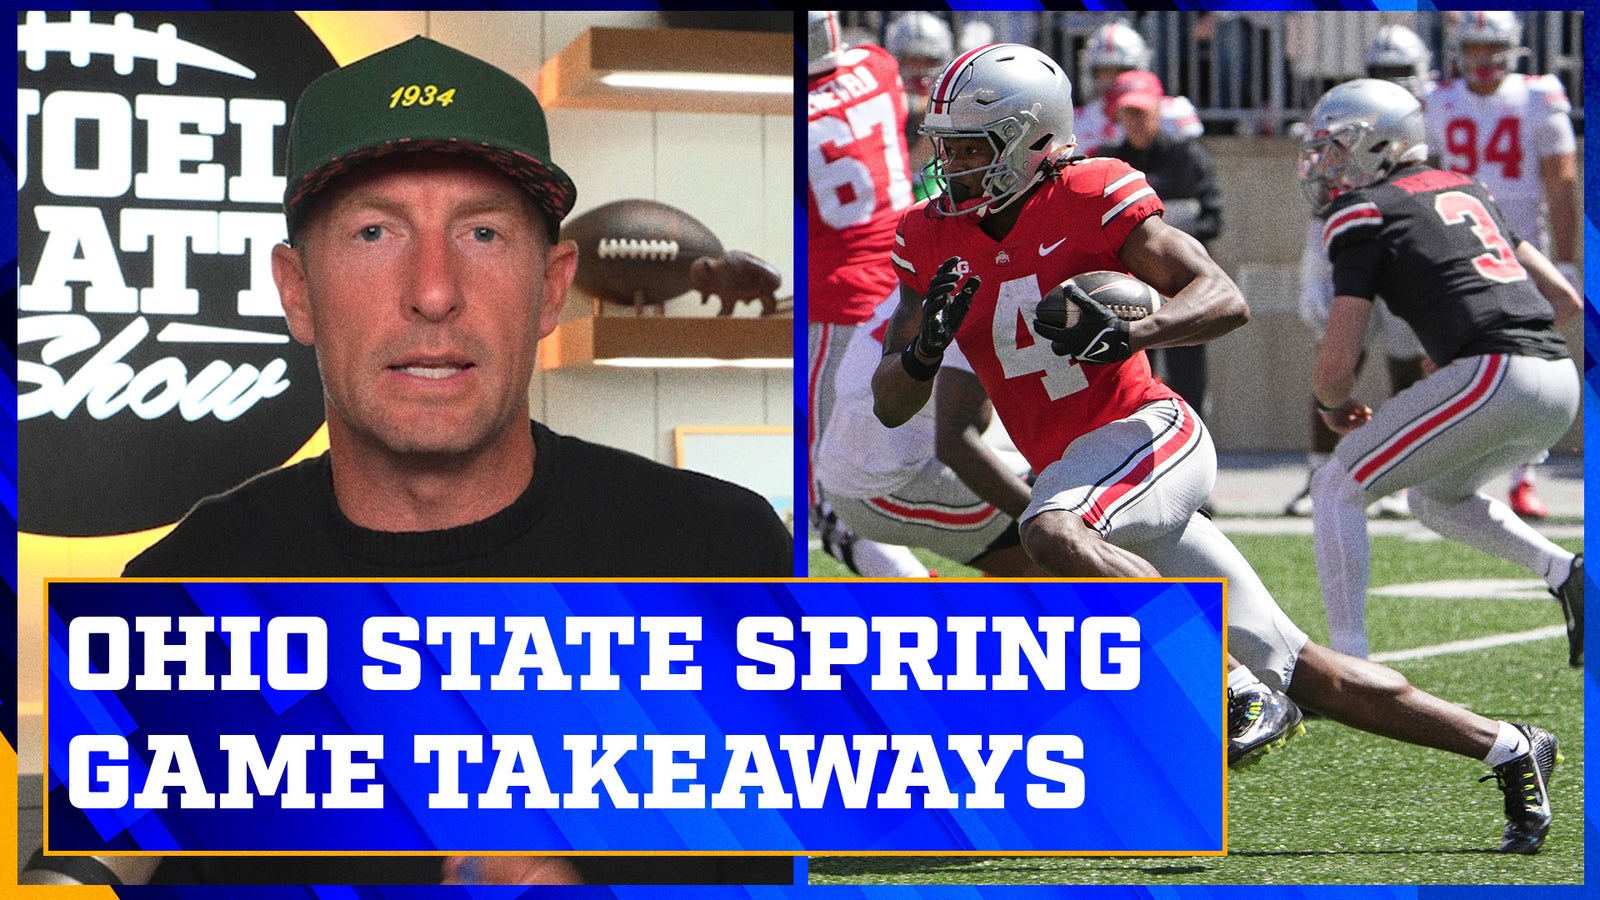 Joel Klatt’s takeaways from the Ohio State spring game 